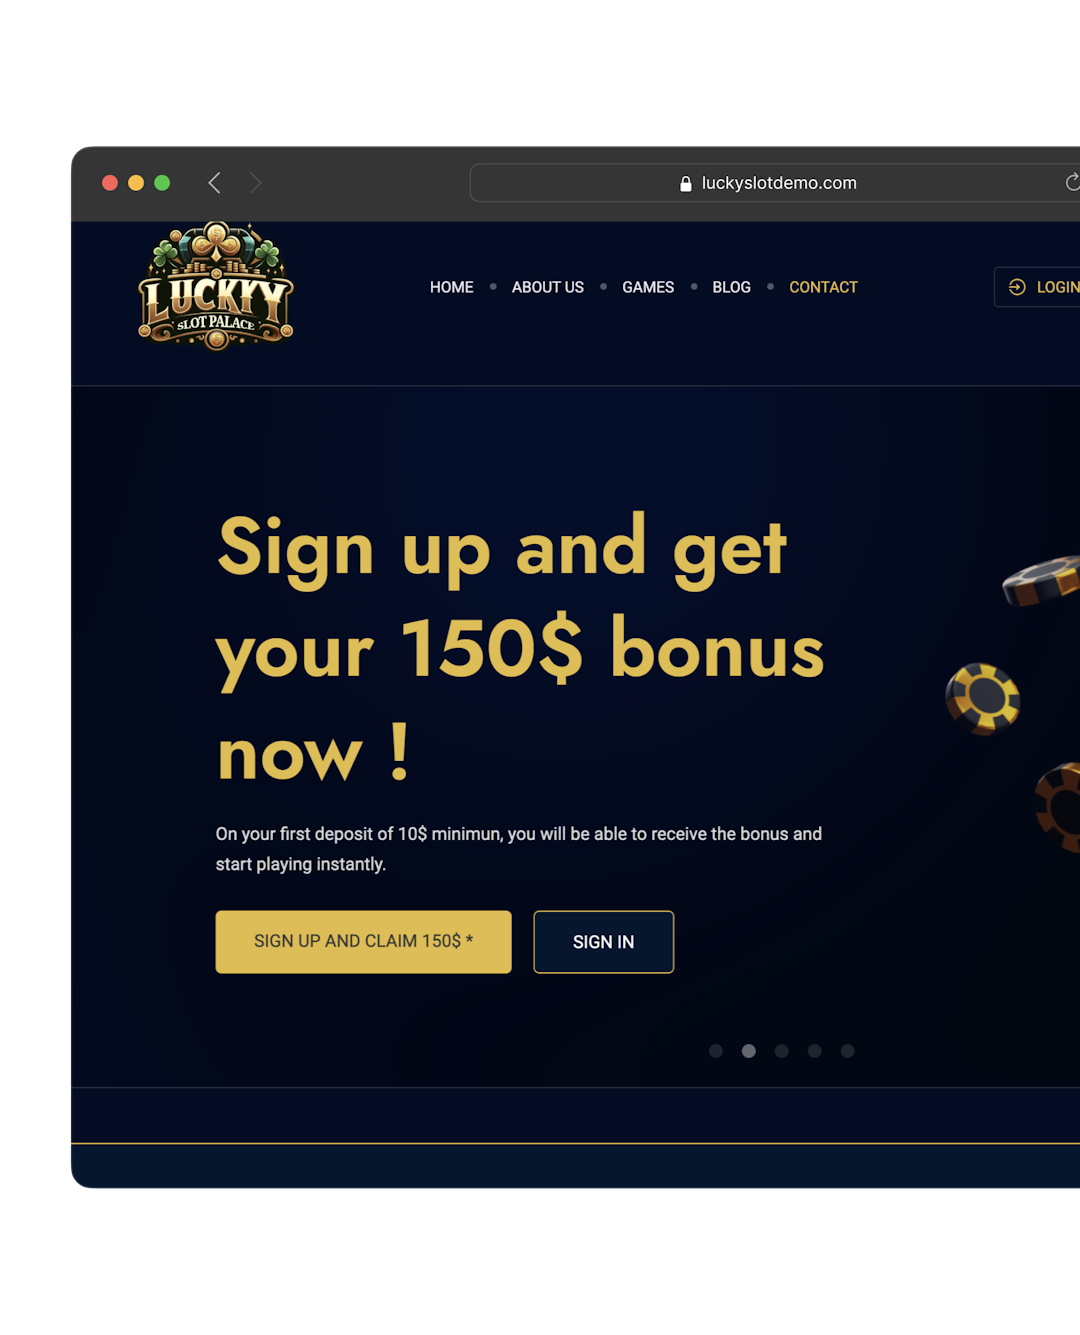 Lucky Slot Palace － Site de casino en ligne